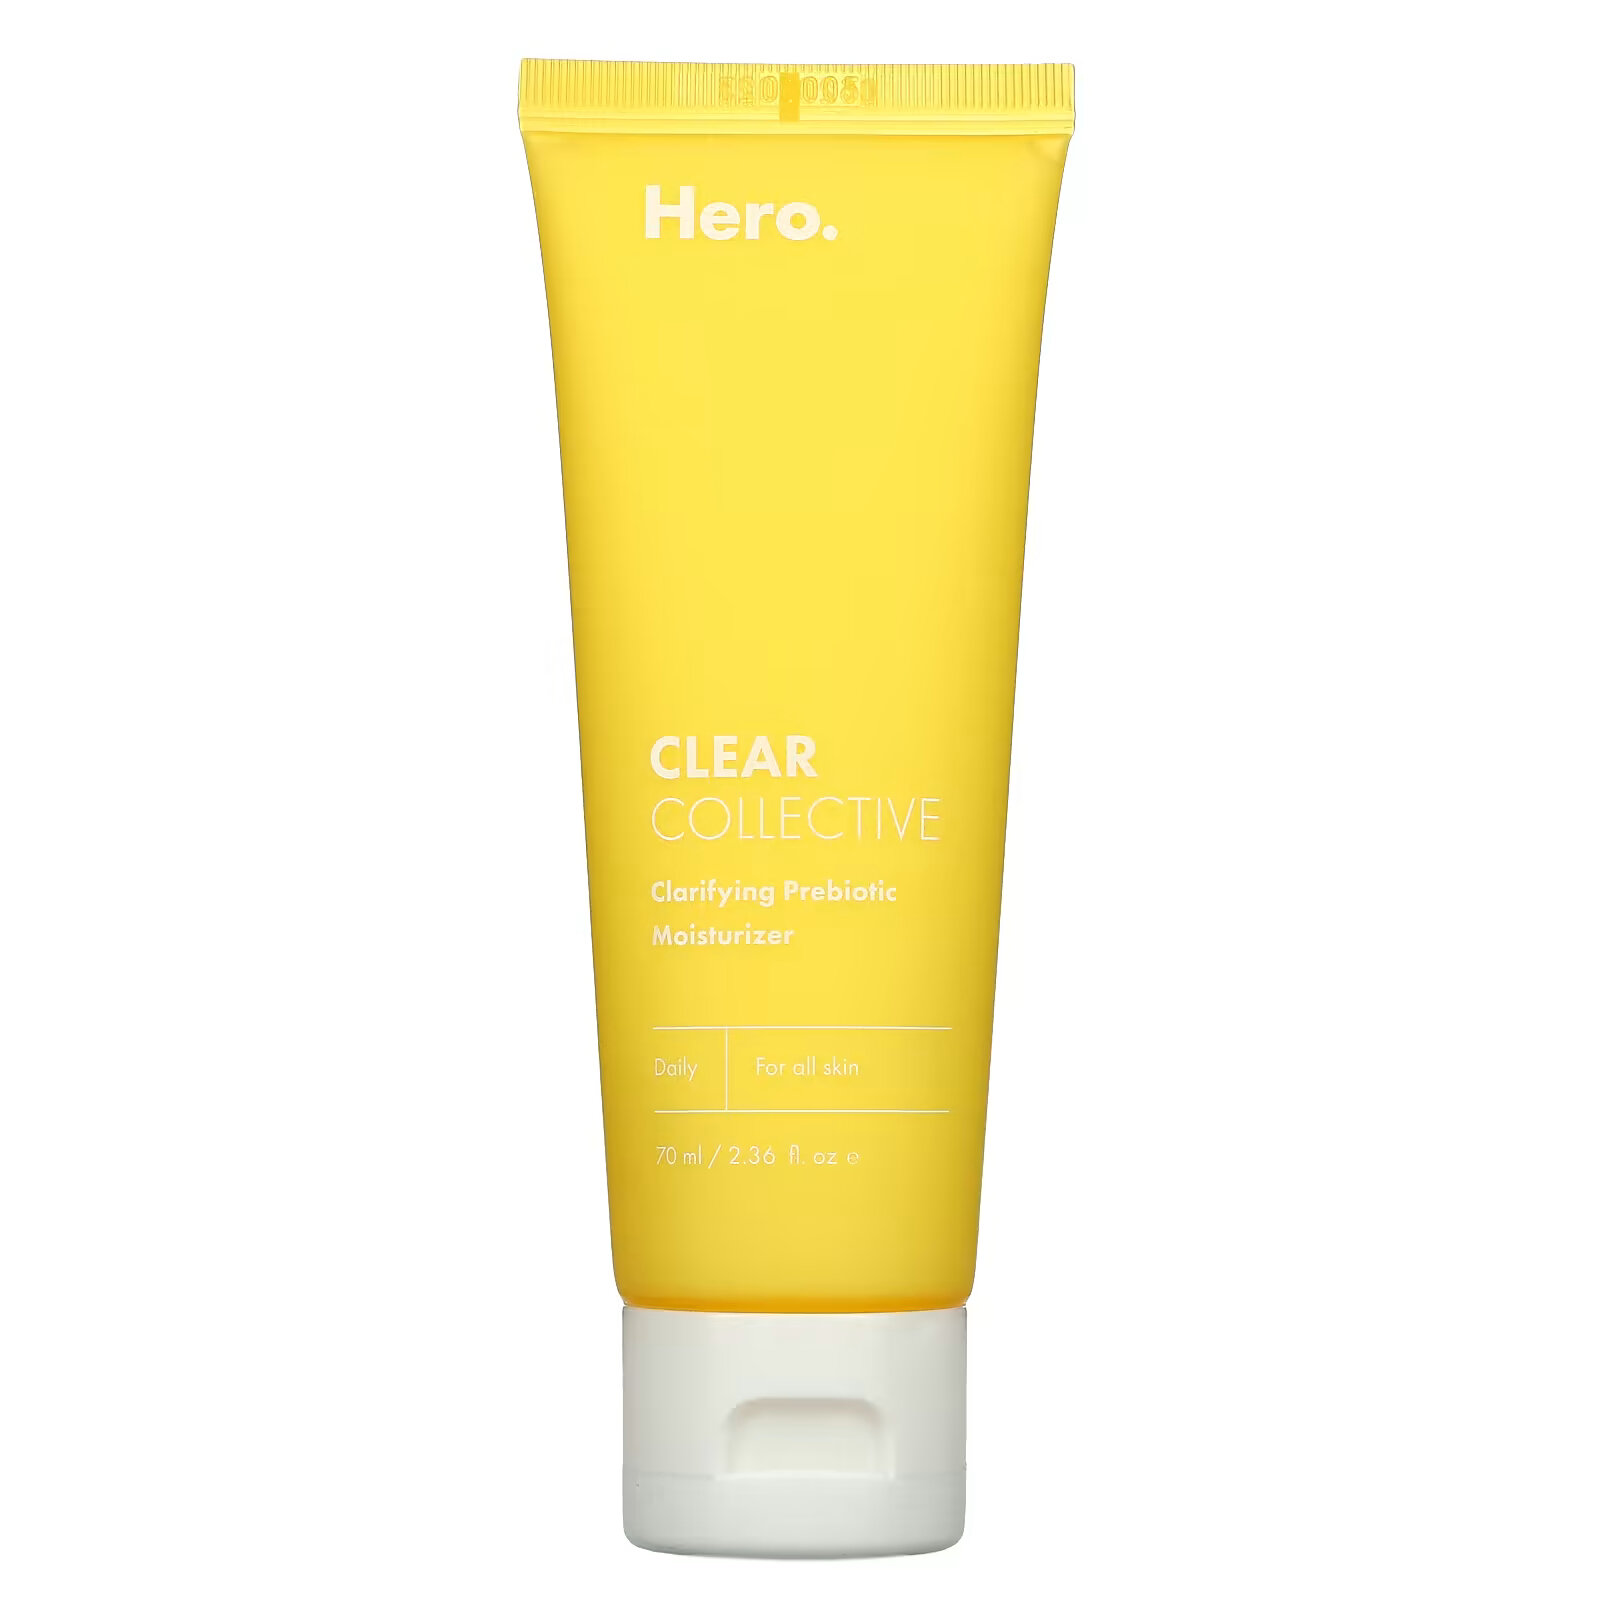 Hero Cosmetics, Clear Collective, очищающий увлажняющий крем с пребиотиками, 70 мл (2,36 жидк. унции)